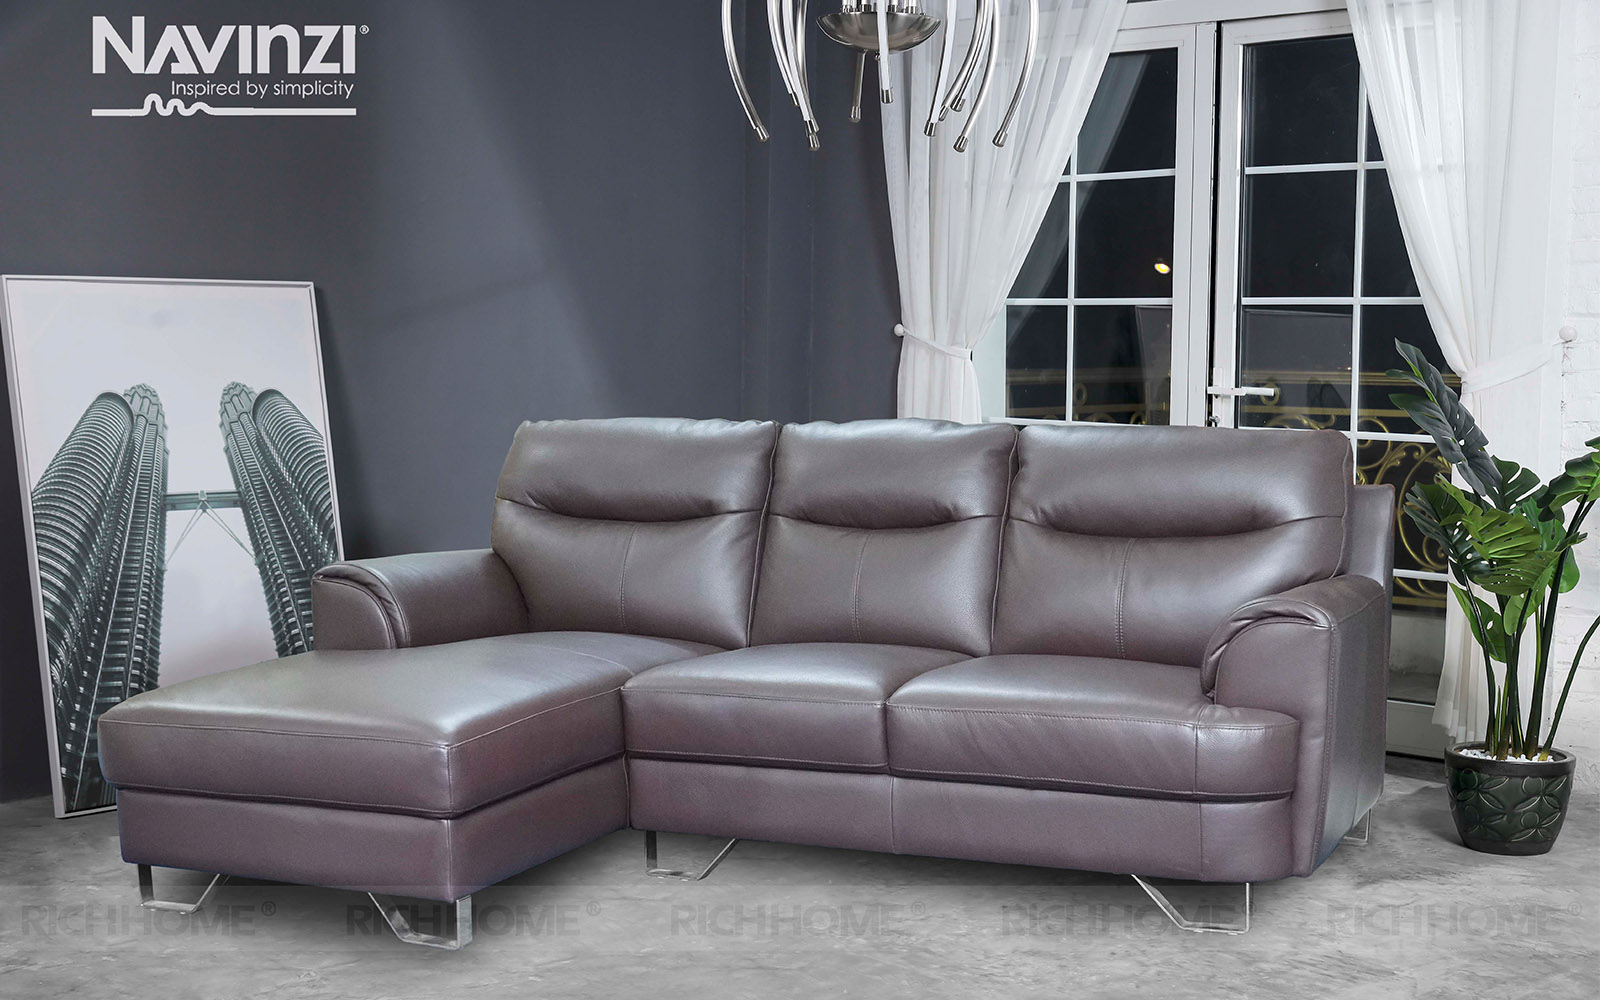 15 mẫu ghế sofa cho phòng khách 15m2 đẹp và Hot nhất hiện nay - Ảnh 10